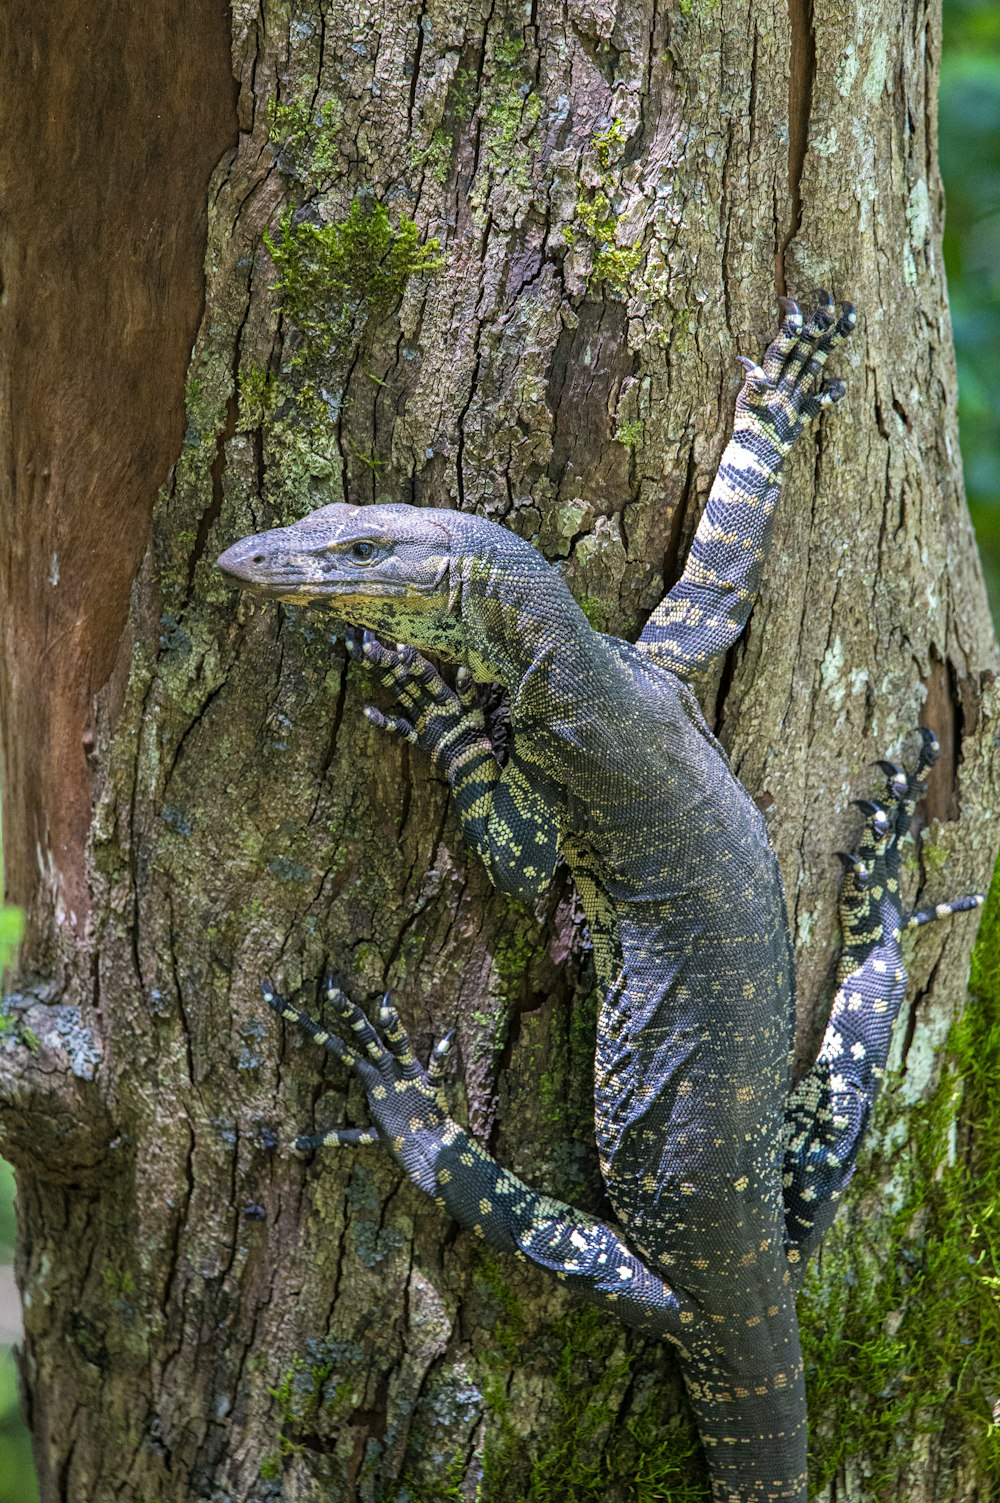 a lizard on a tree